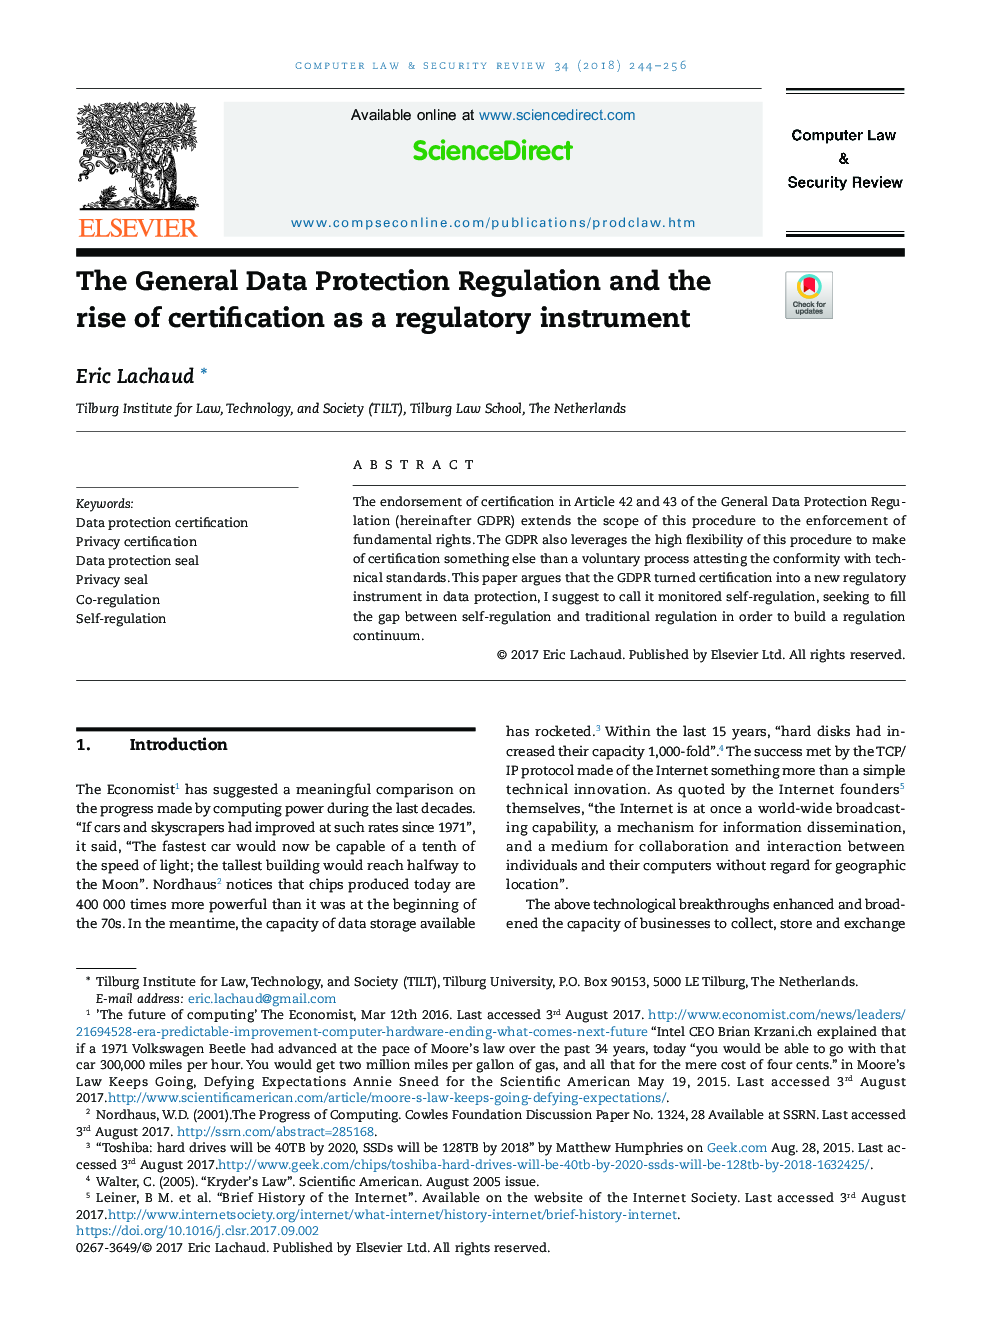 مقررات حفاظت کلی داده ها و افزایش صدور گواهینامه به عنوان یک ابزار نظارتی 